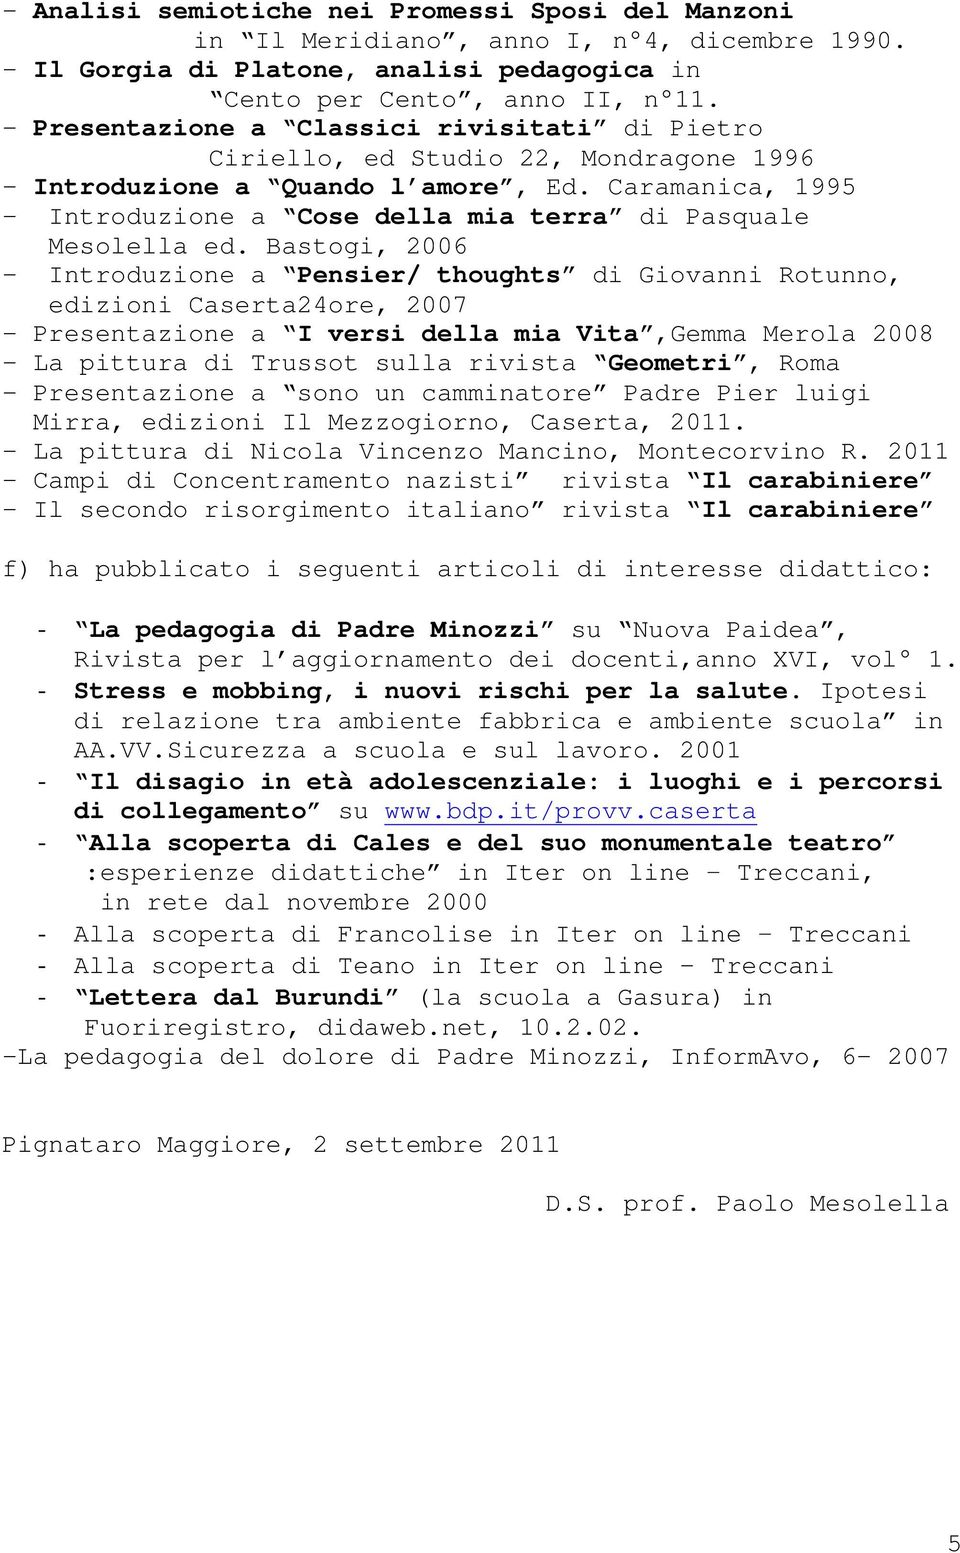 Caramanica, 1995 - Introduzione a Cose della mia terra di Pasquale Mesolella ed.